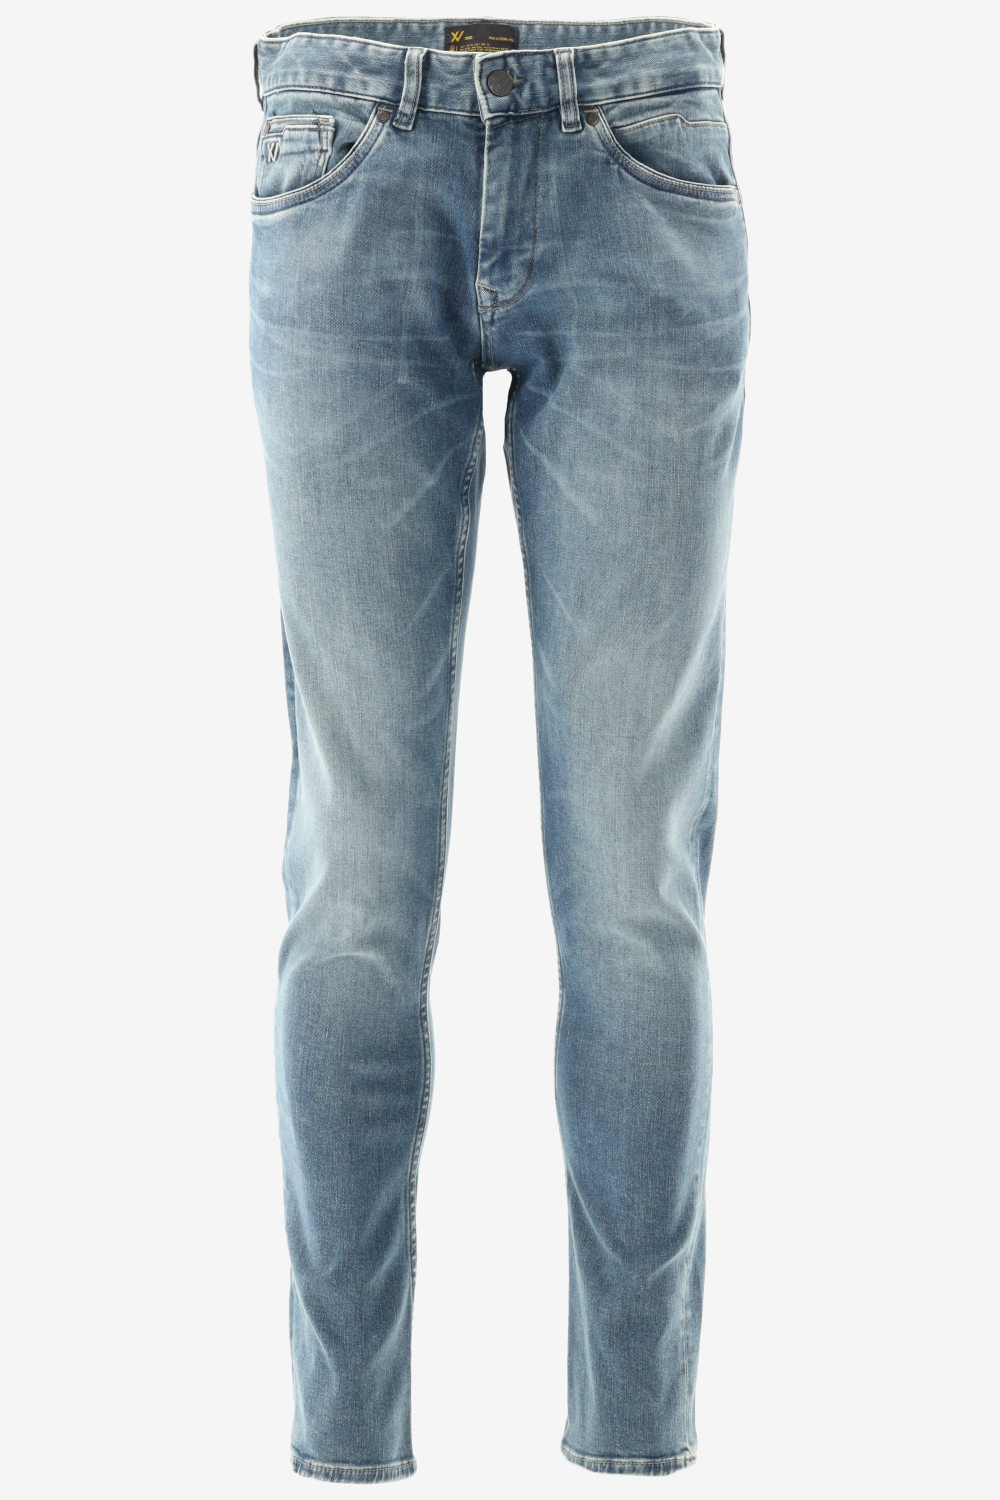 Herenkleding Jeans Pme Legend VERZENDING! | Outlet GRATIS - - Fit Bergmans XV Slim Webshop Fashion